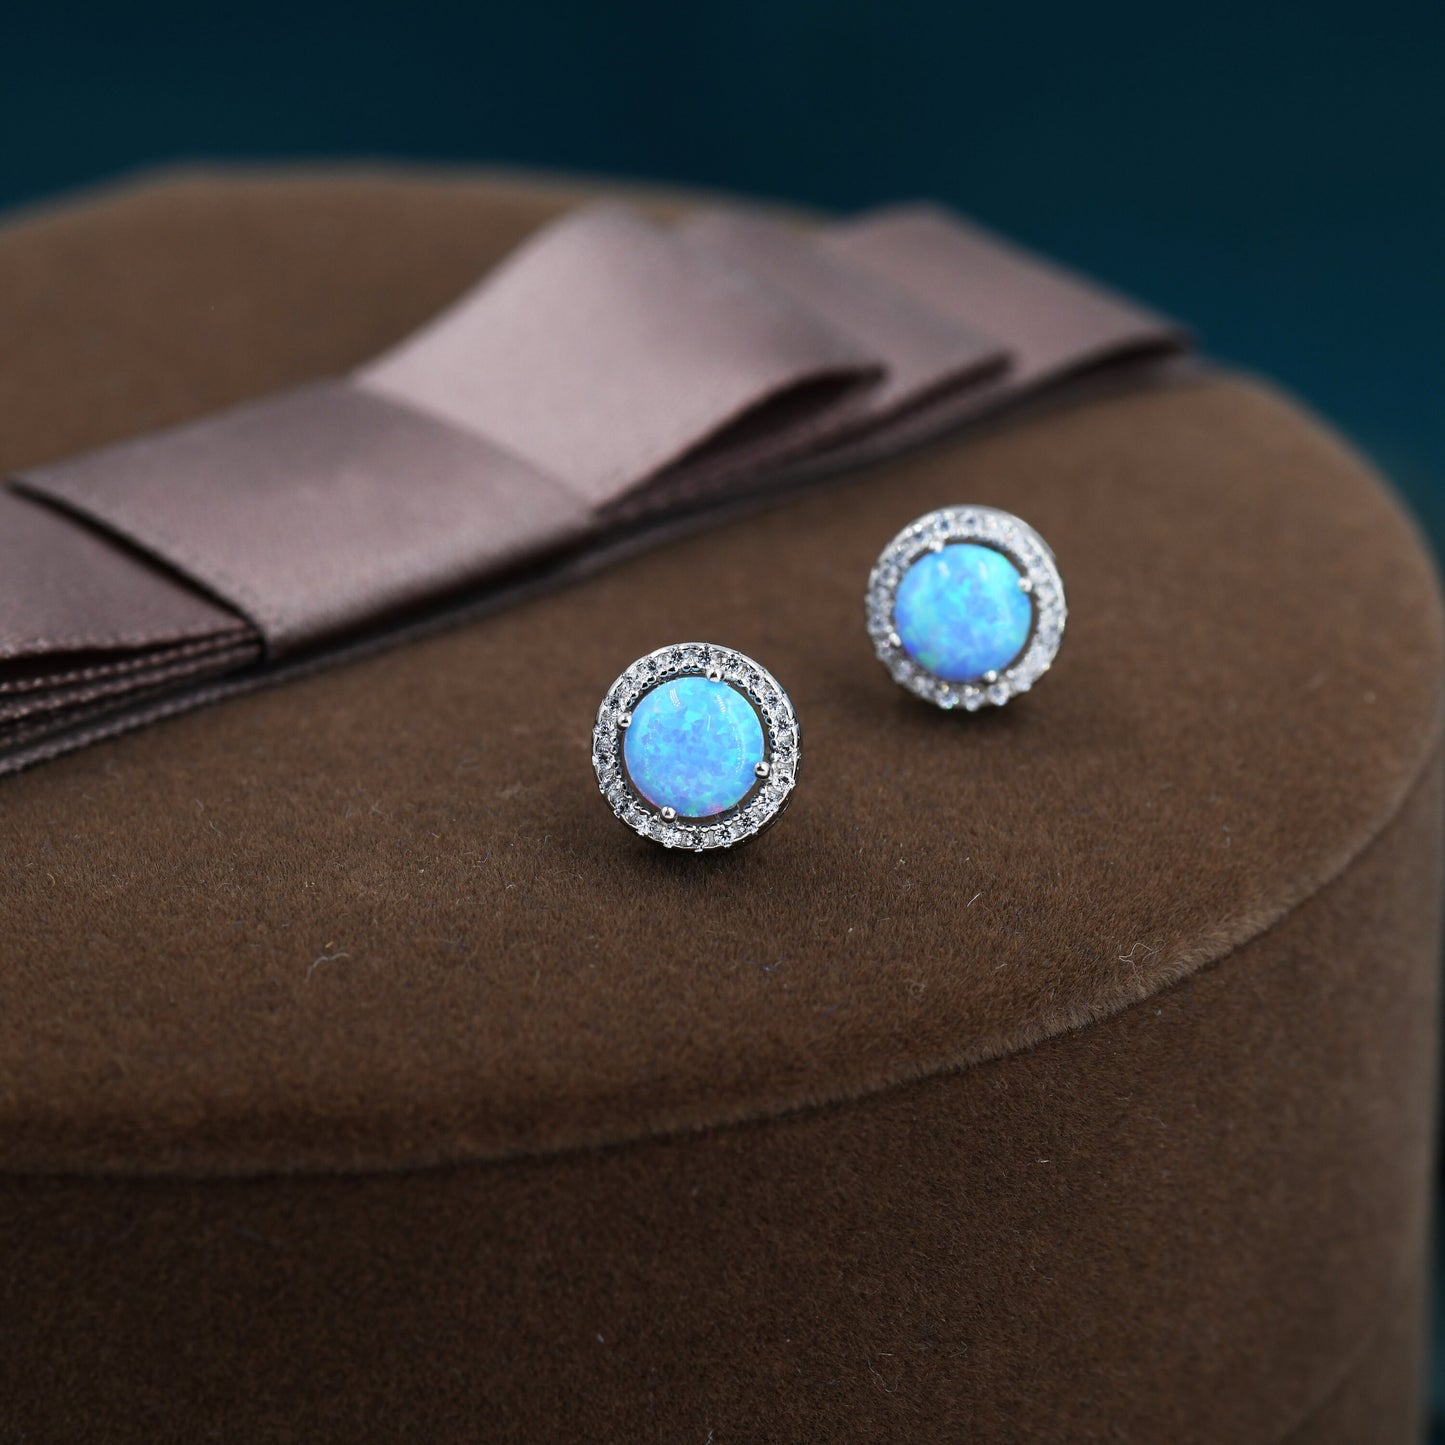 Blue Opal CZ Halo Stud Earrings in Sterling Silver - 8mm - Sustainable Lab Opal - Petite Stud Earrings